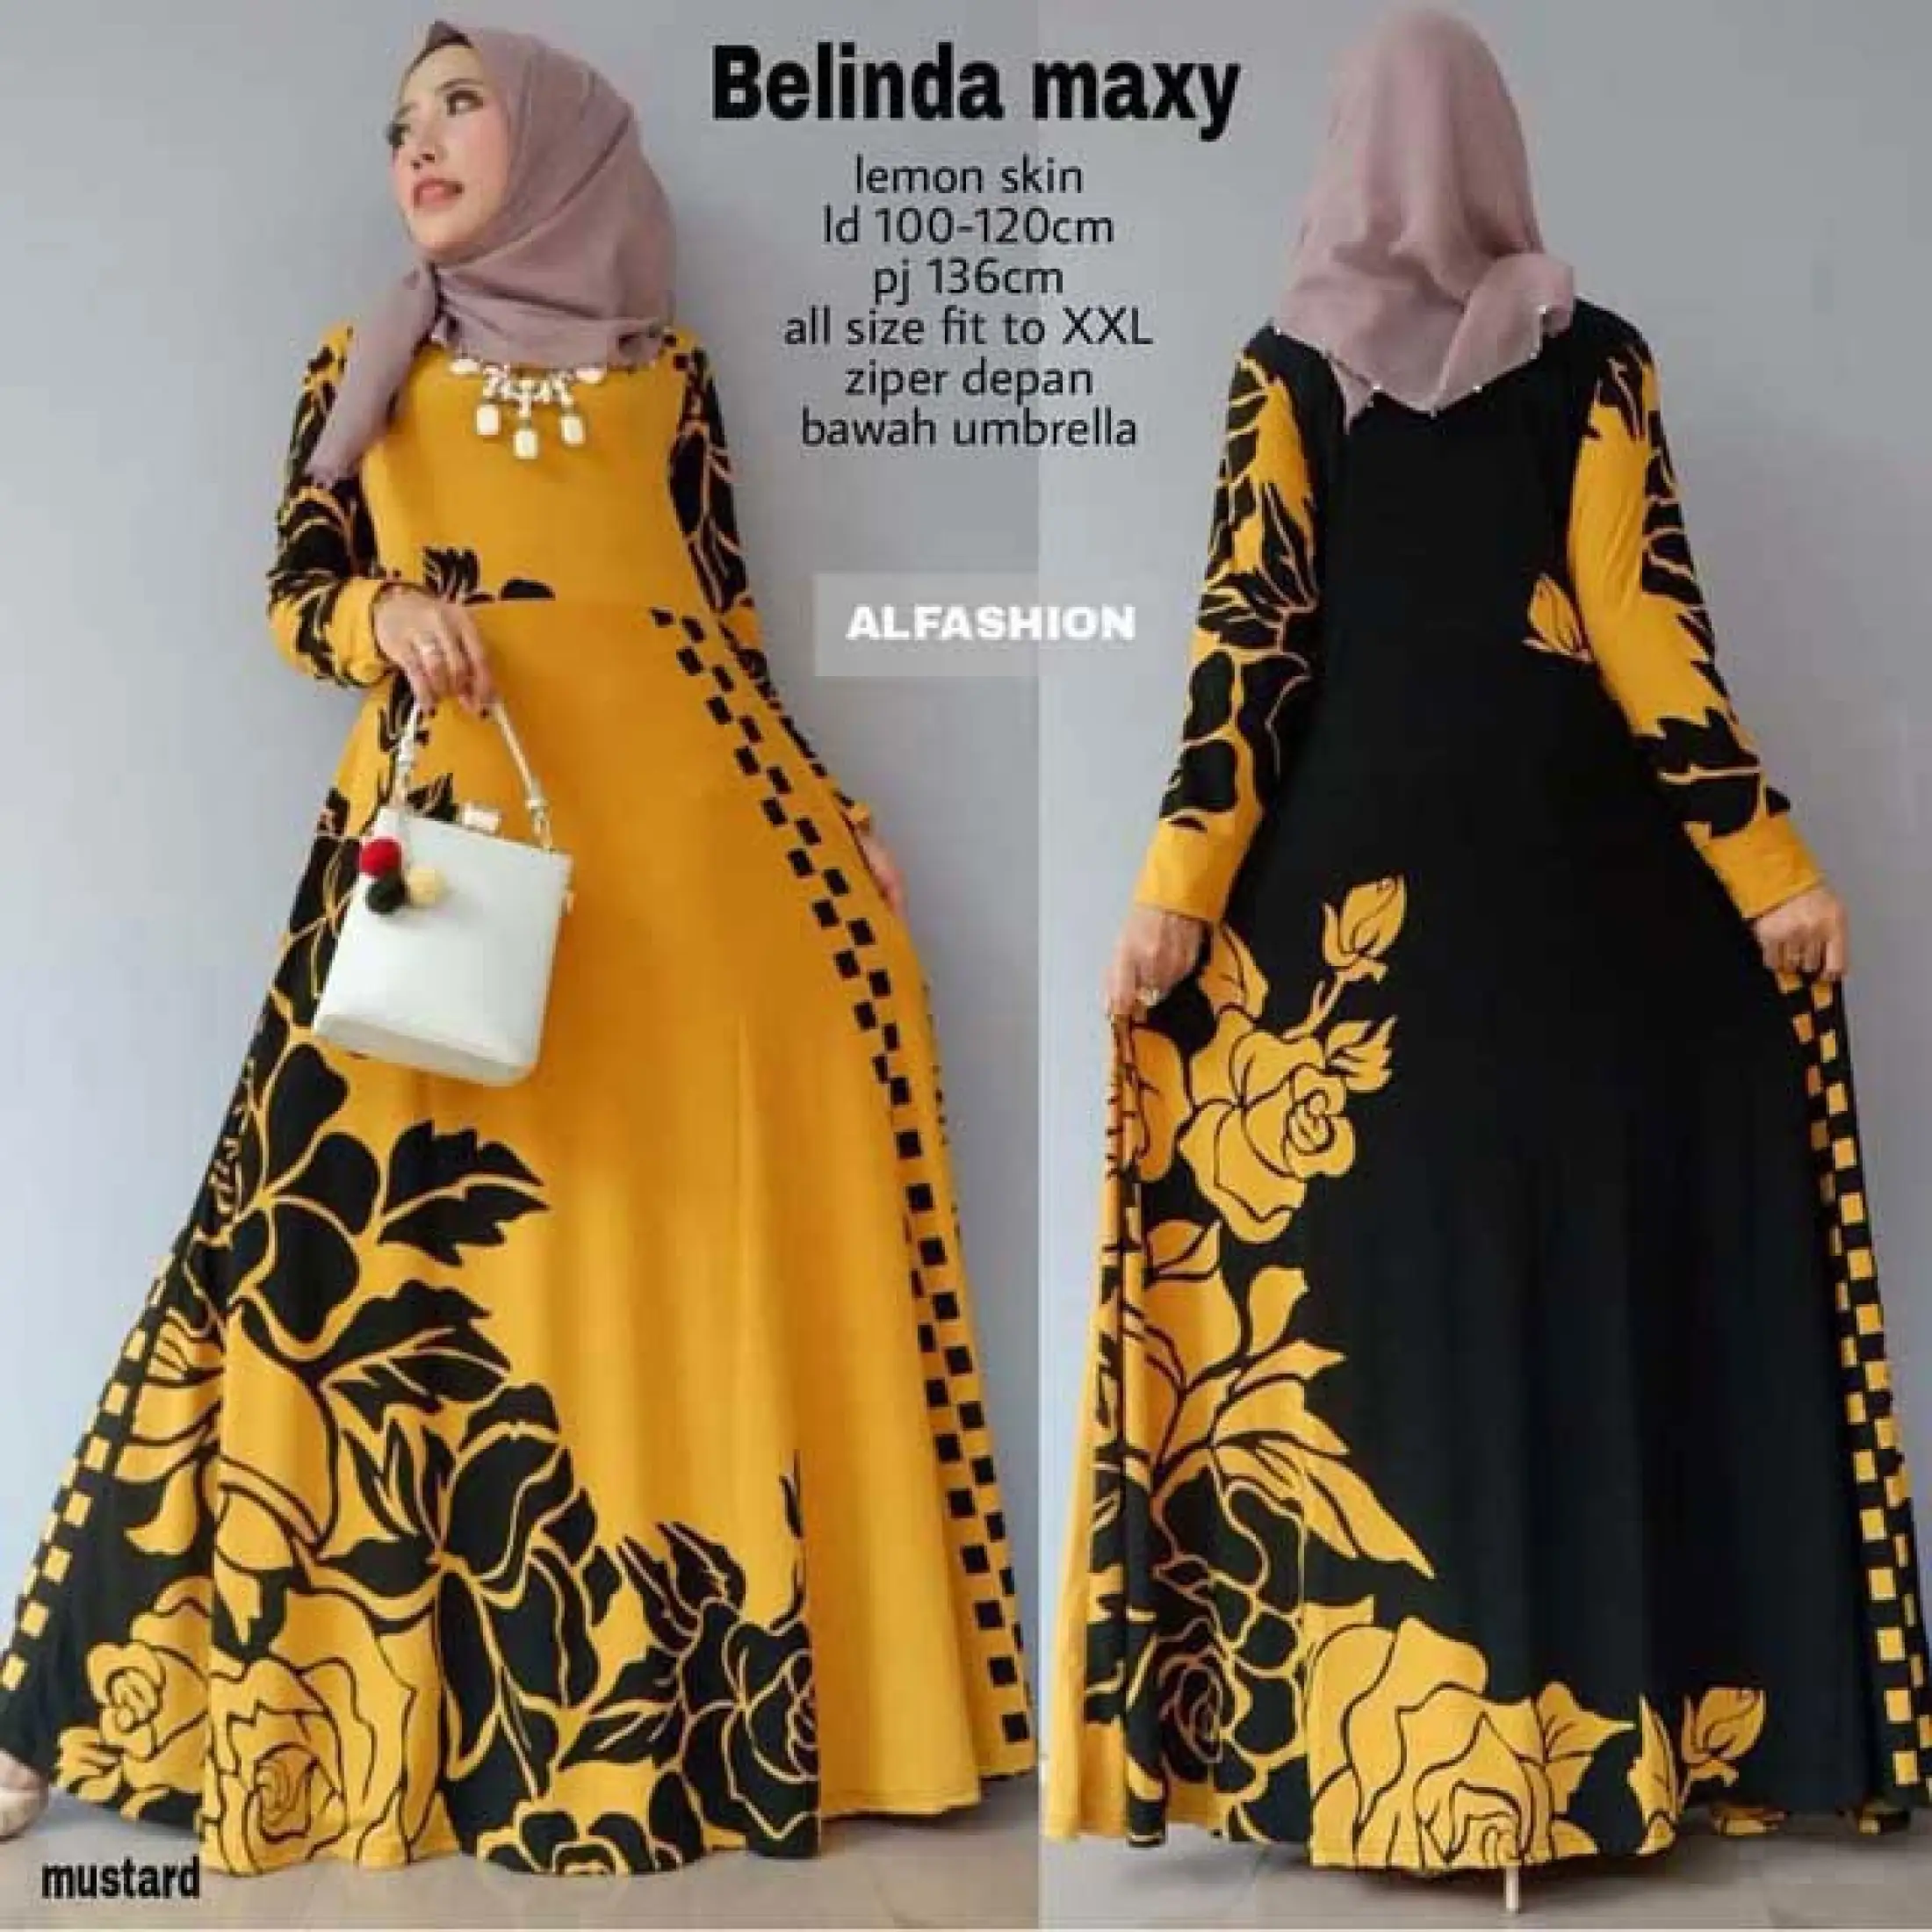 Gamis Lemon Skin Jersey Super Belinda Maxy Baju Muslim Murah Long Dress Muslimah Lazada Indonesia